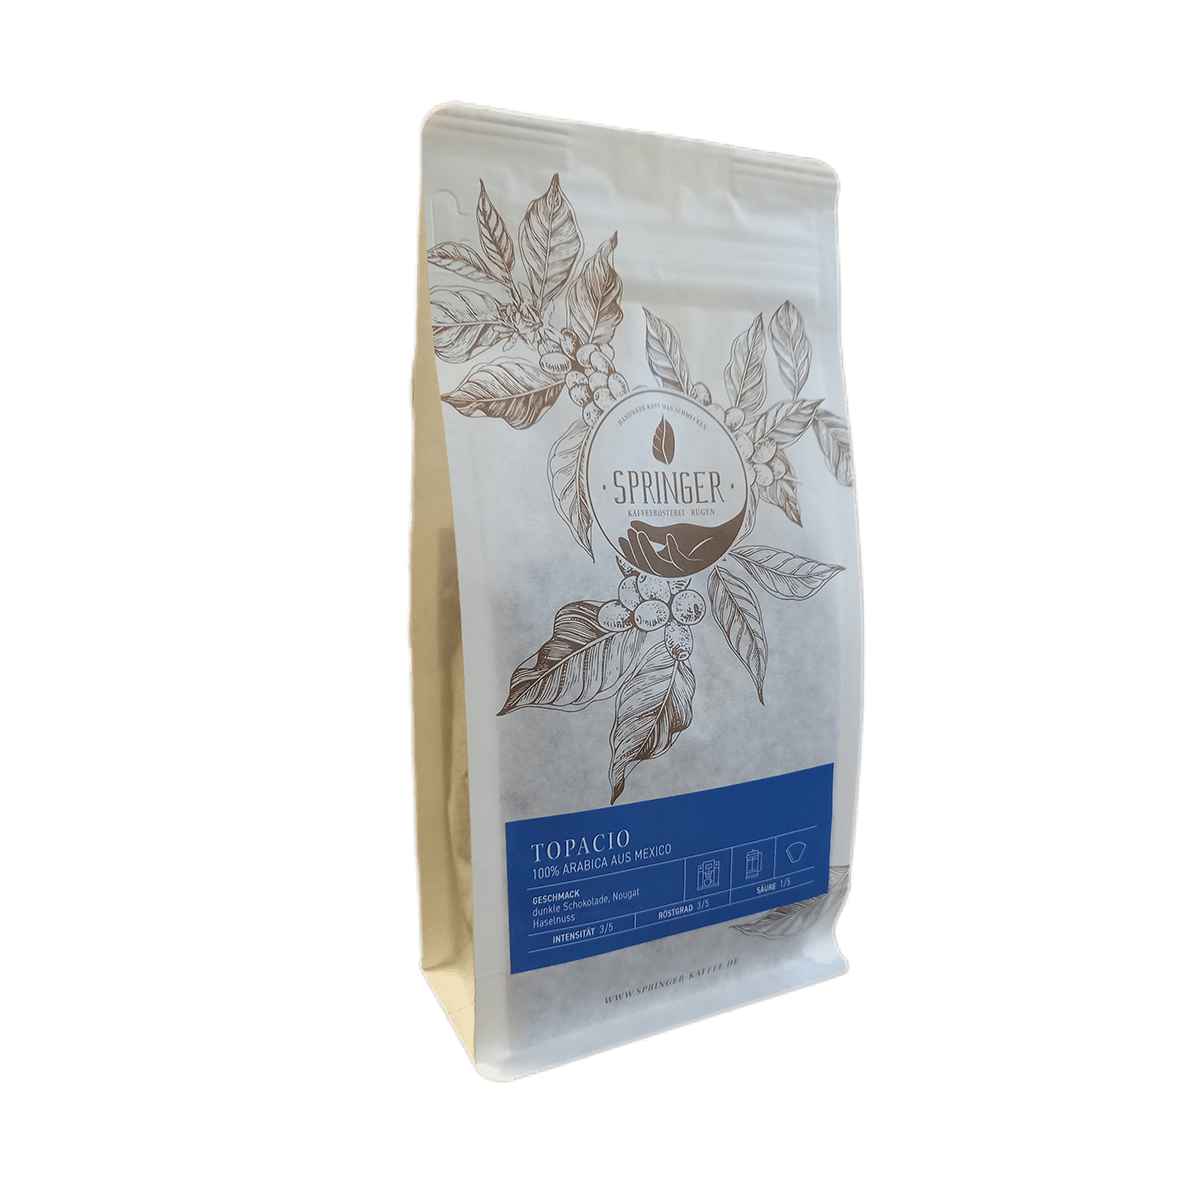 Topacio – Kaffeesorte aus Mexiko der Springer Kaffeerösterei auf Rügen